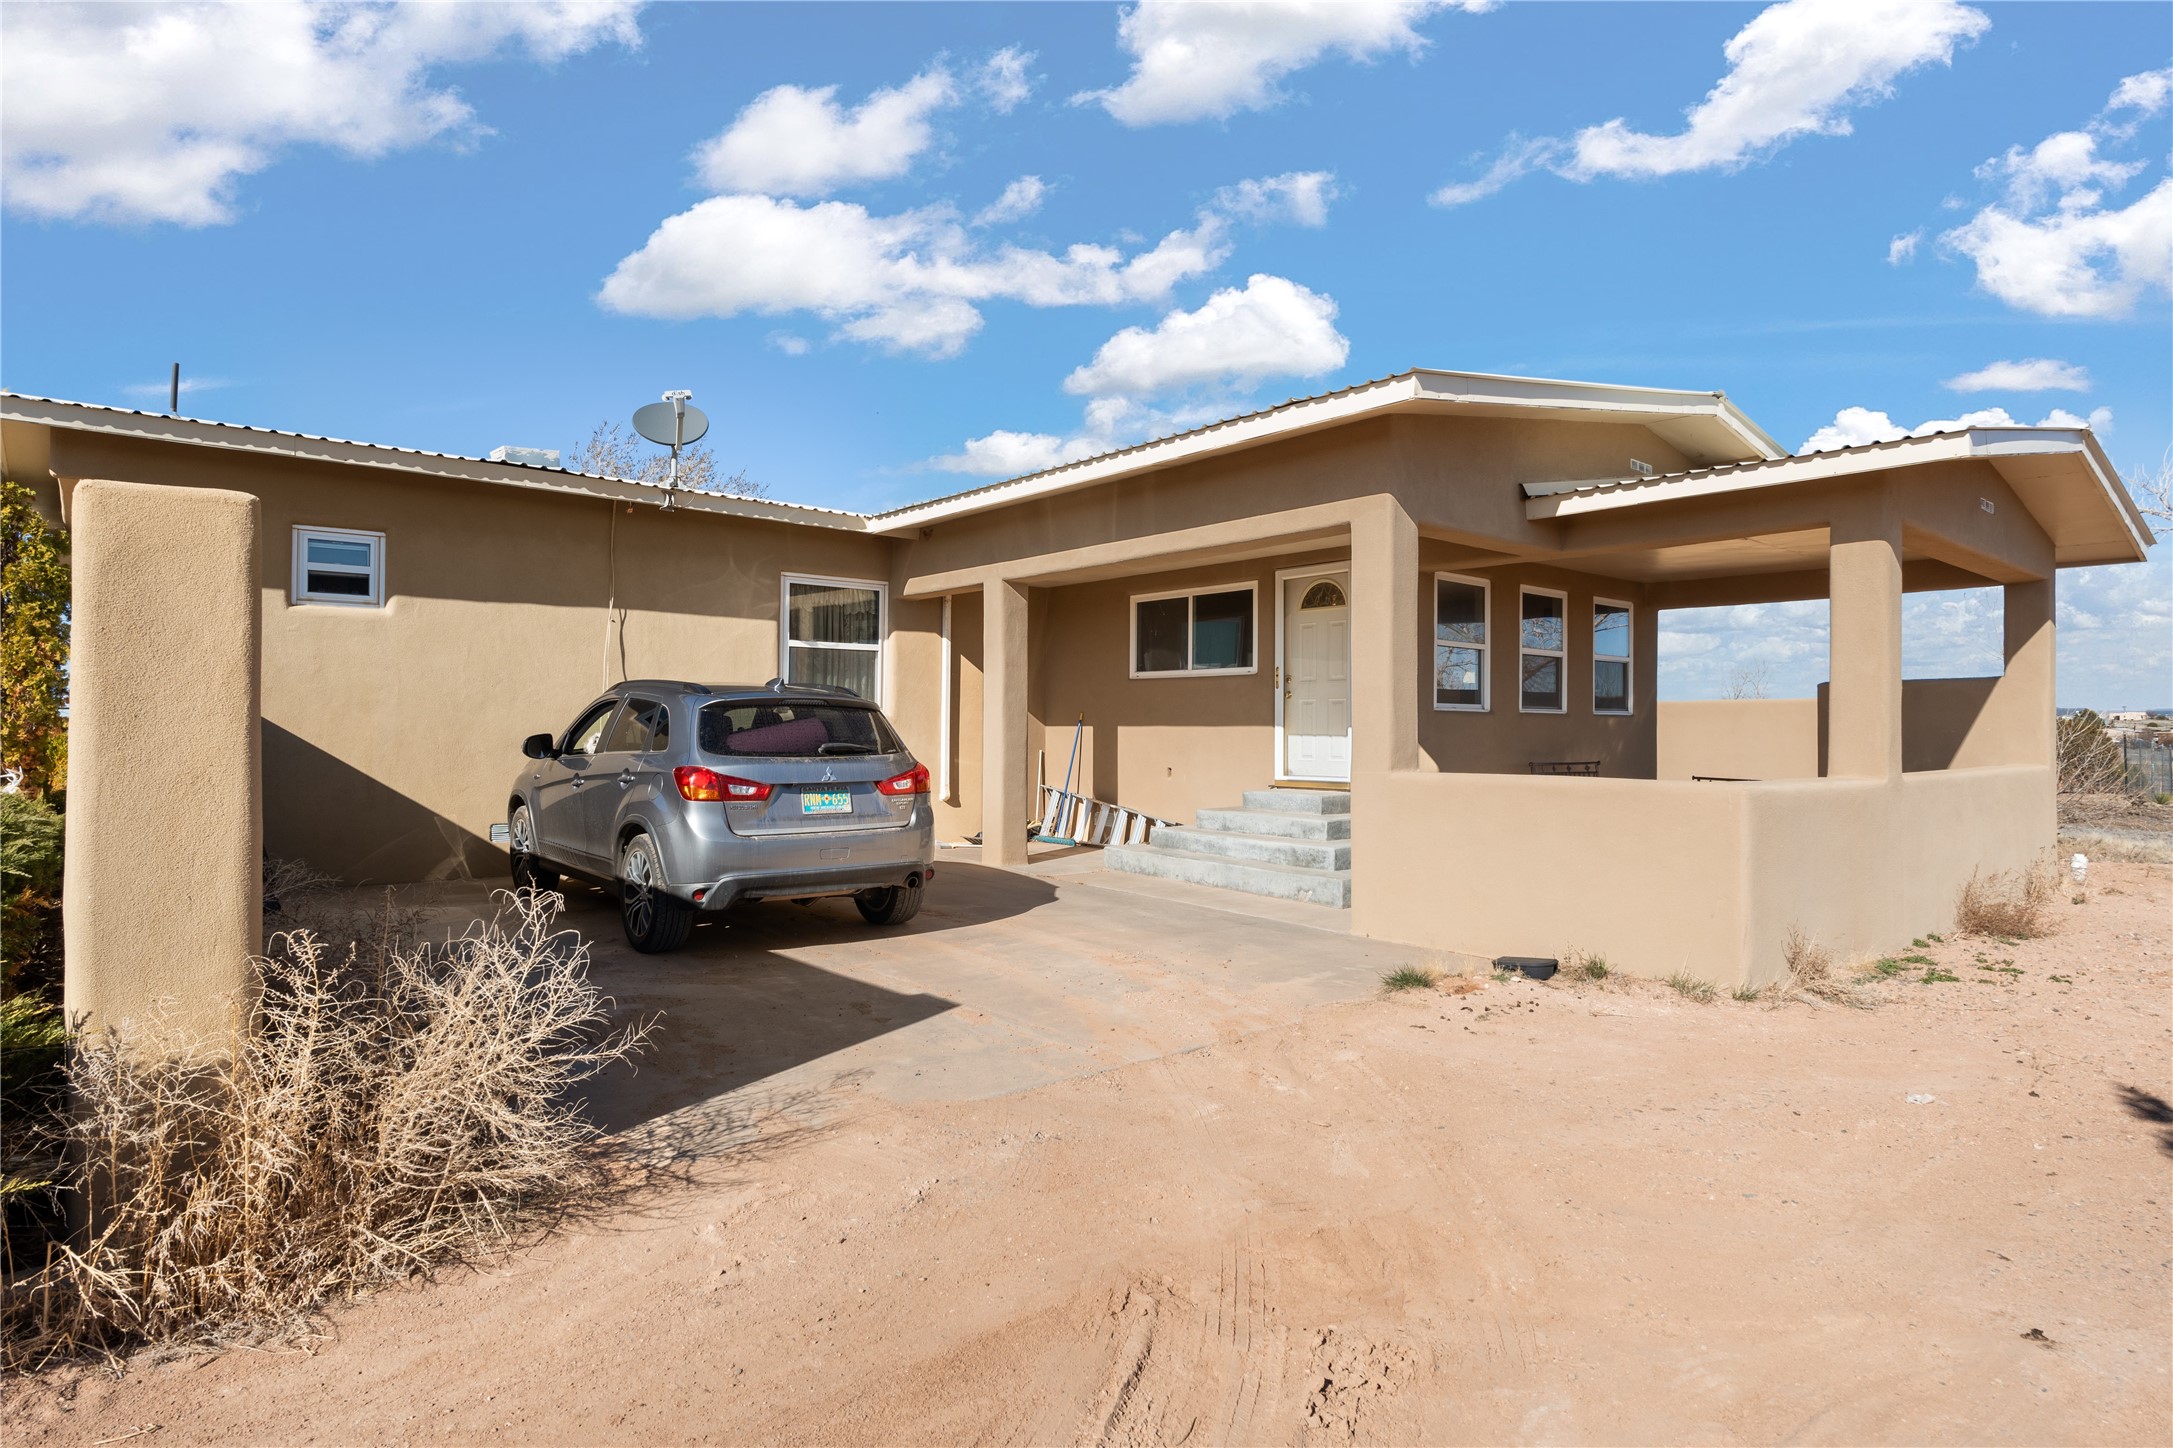 16 Yucca Way, Santa Fe, New Mexico 87508, 2 Bedrooms Bedrooms, ,2 BathroomsBathrooms,Residential,For Sale,16 Yucca Way,202401105